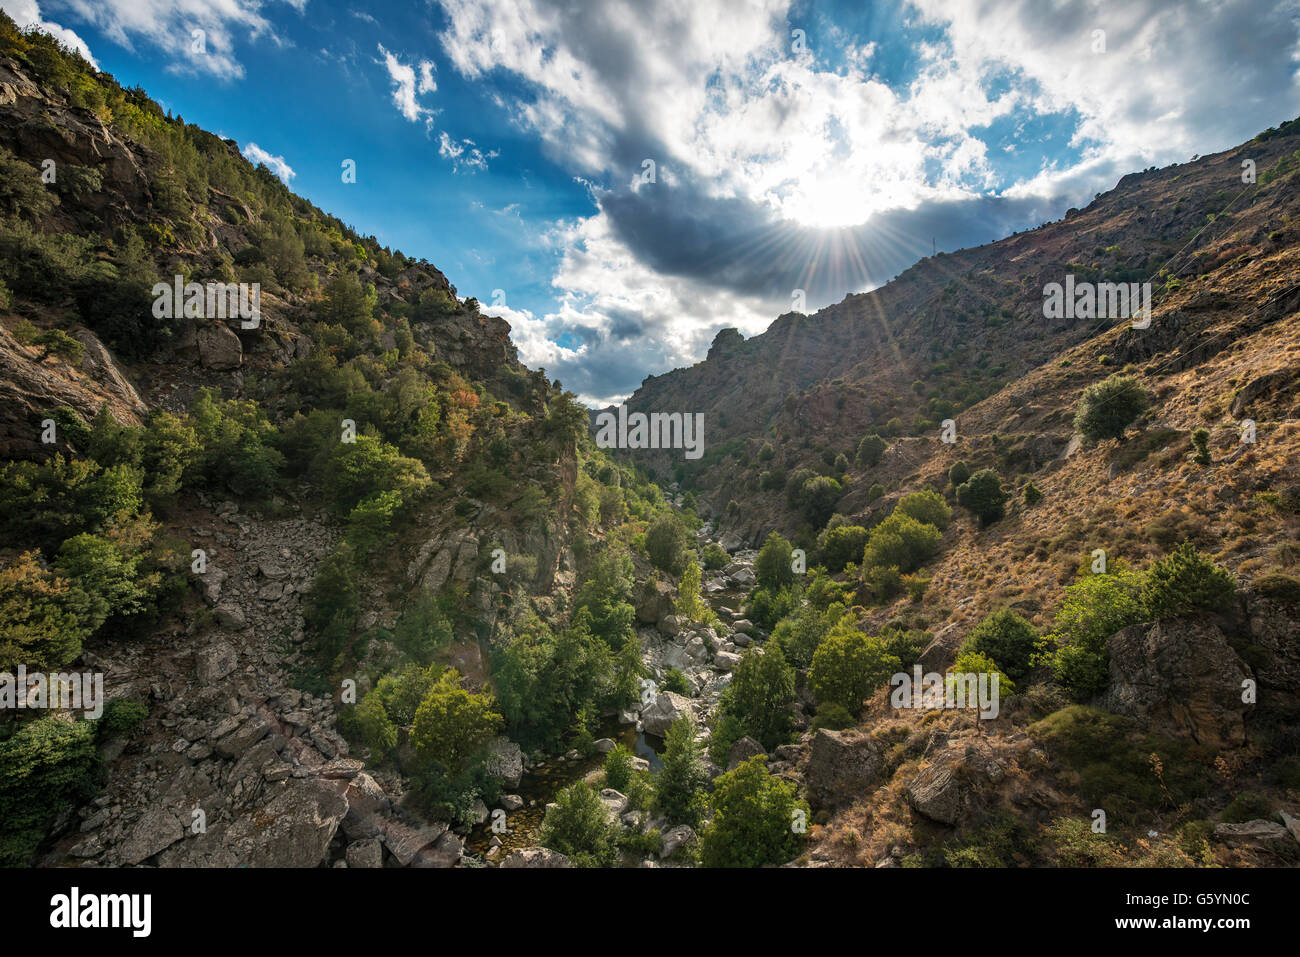 La vallée inférieure de la rivière Golo, Golo, soleil qui brille à travers les nuages, Corse, France Banque D'Images